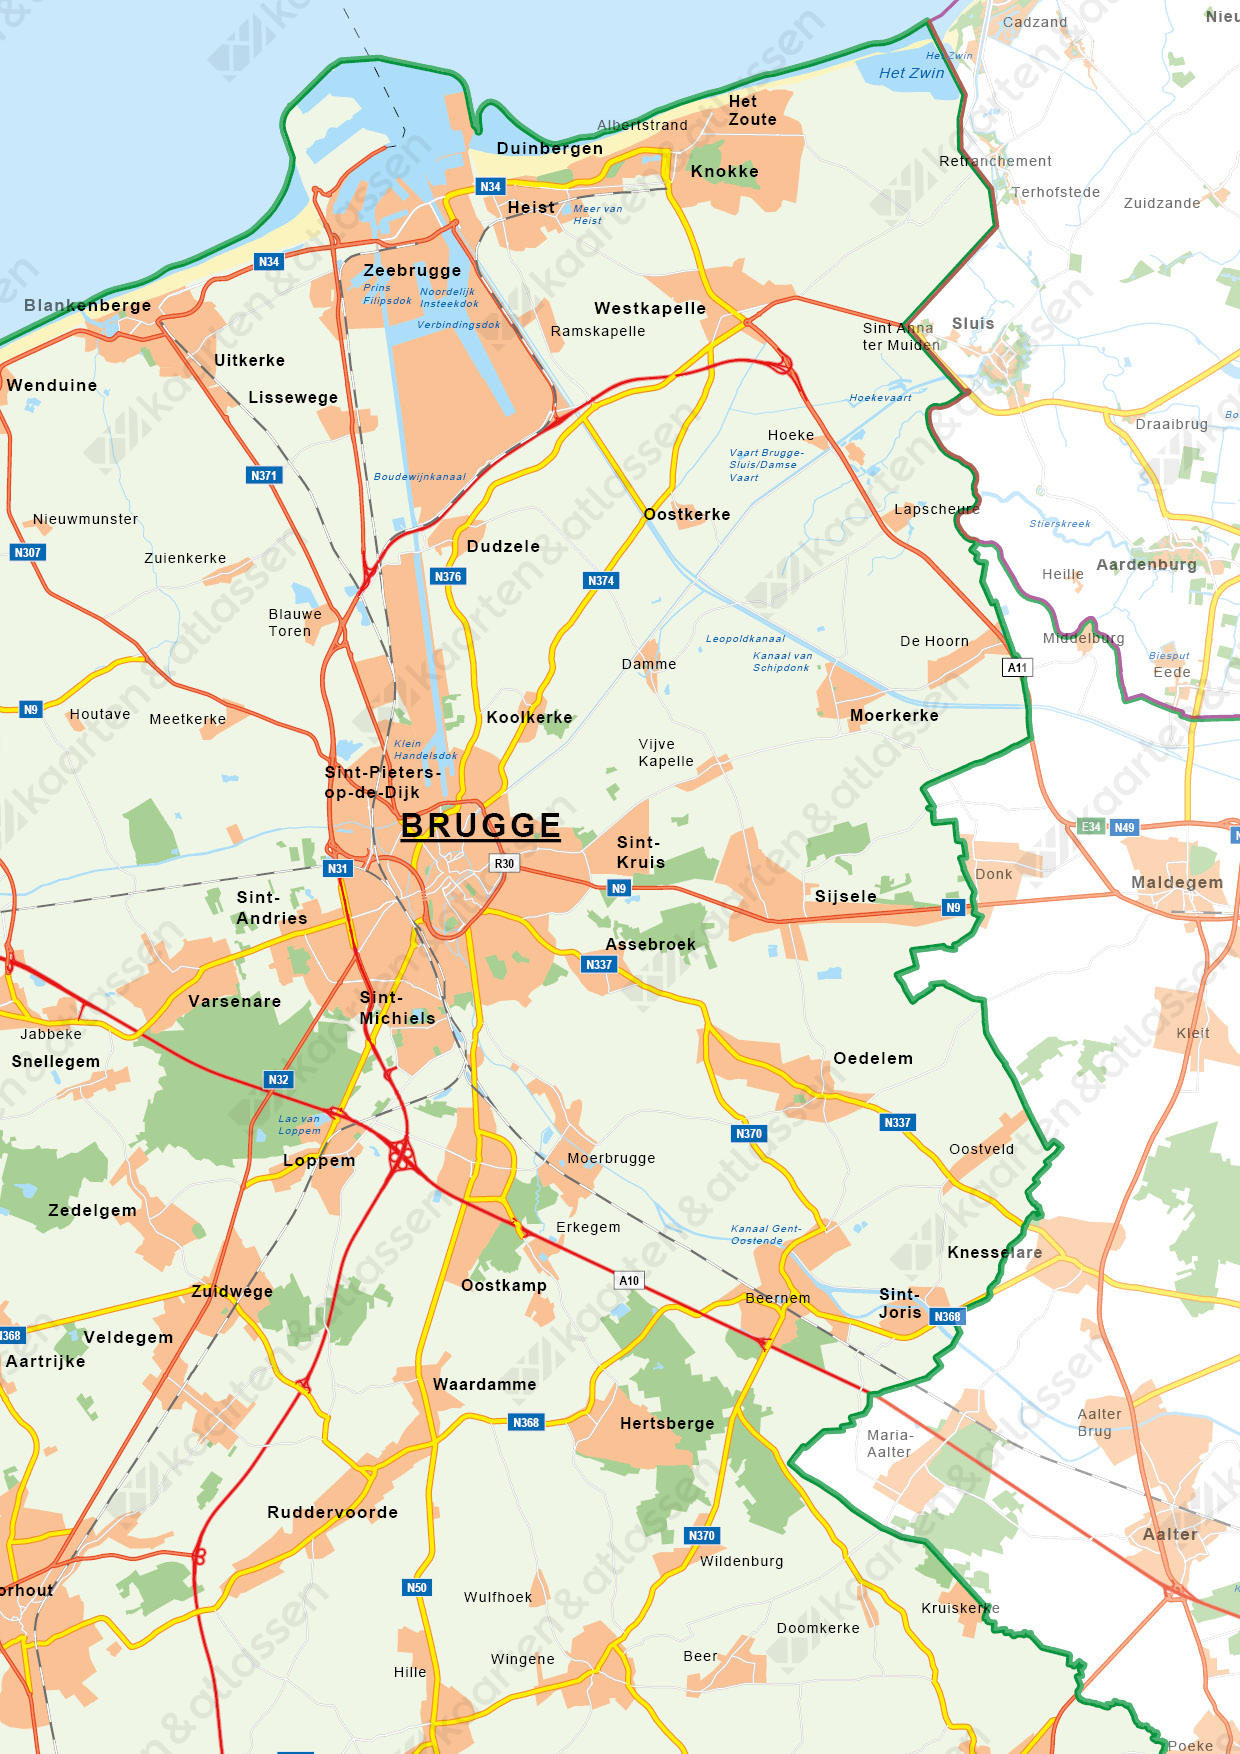 Natuurkundige kaart West-Vlaanderen